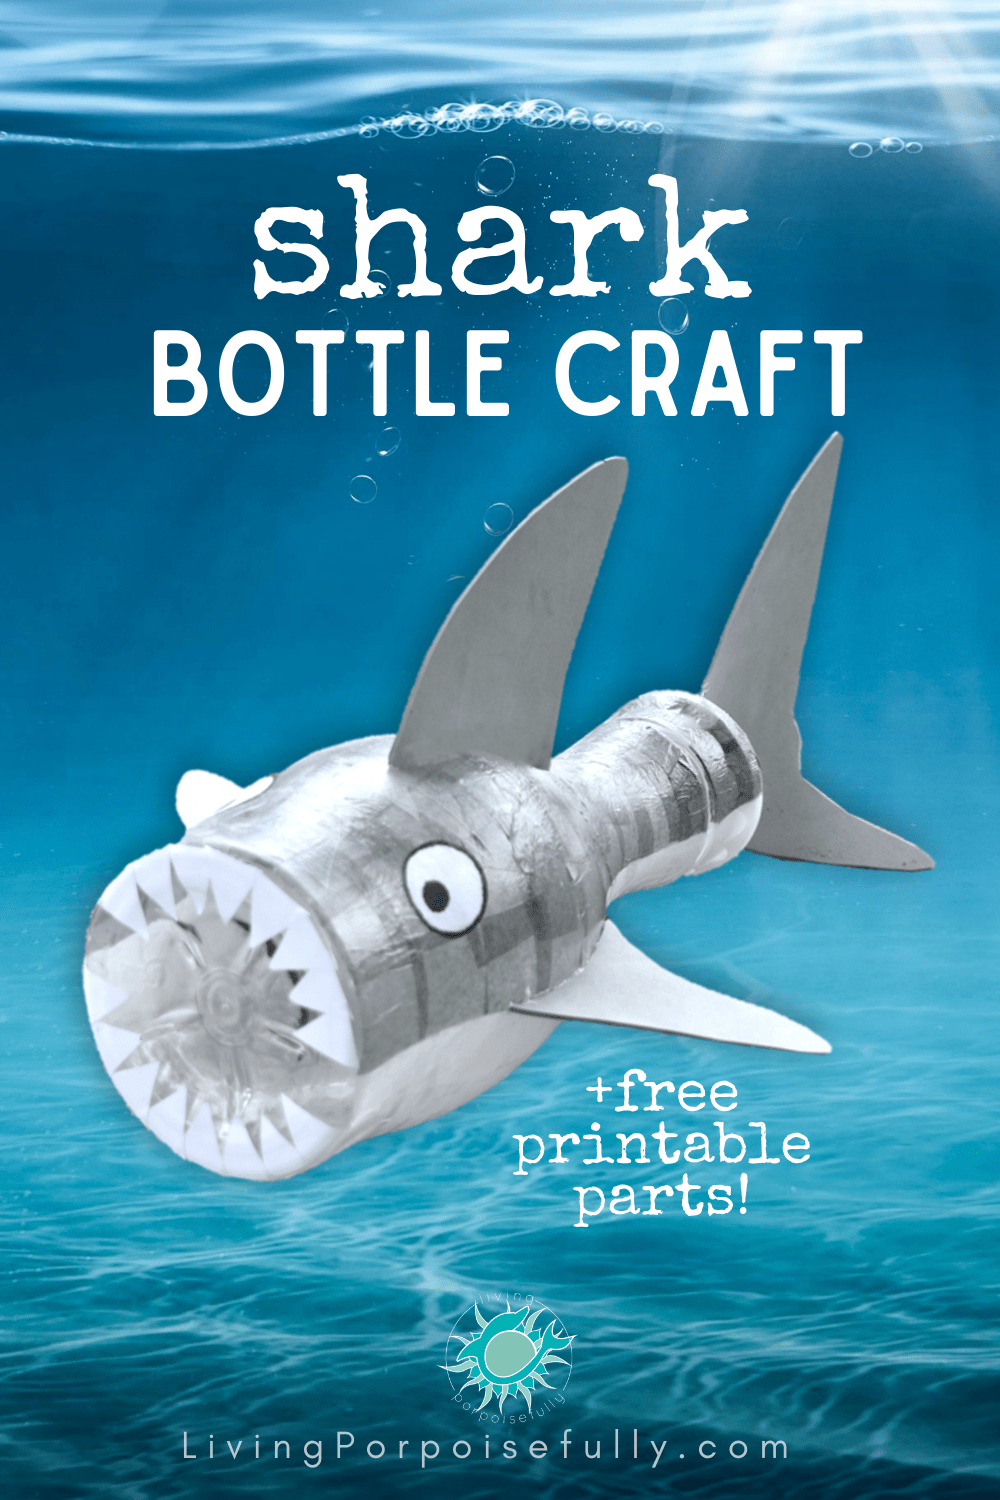 World in a Bottle Handmade DIY for Kids, Drawing Kit, Material Kit